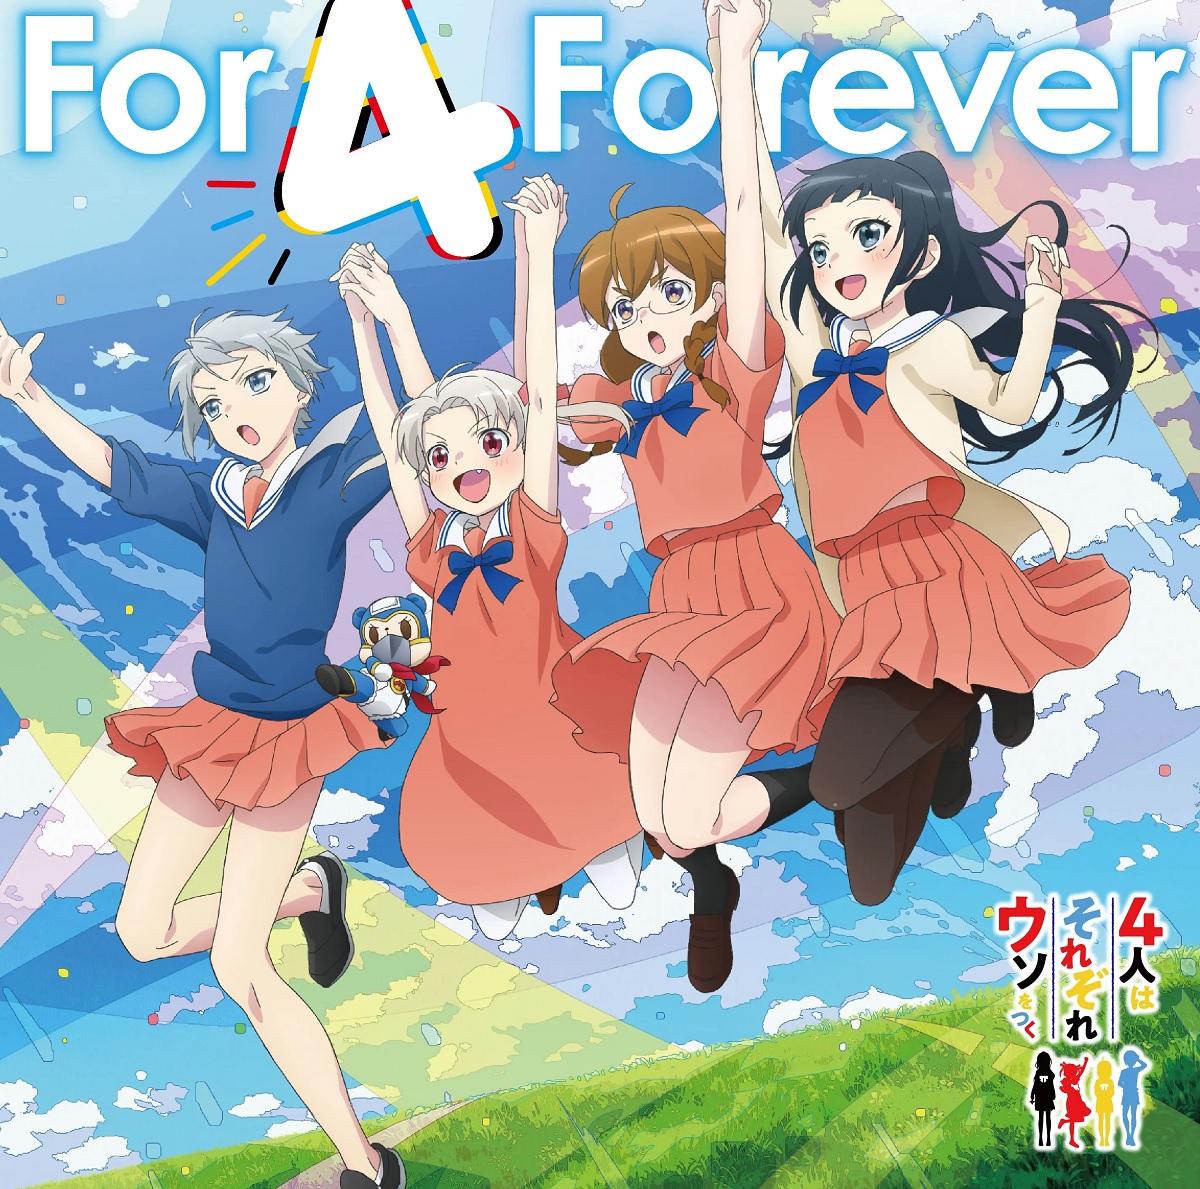 Cover art for『Rikka (Chiemi Tanaka), Chiyo (Natsumi Murakami), Sekine (Ayane Sakura), Tsubasa (Megumi Han) - For 4 Forever』from the release『For 4 Forever / Super Hero☆Maskuma』